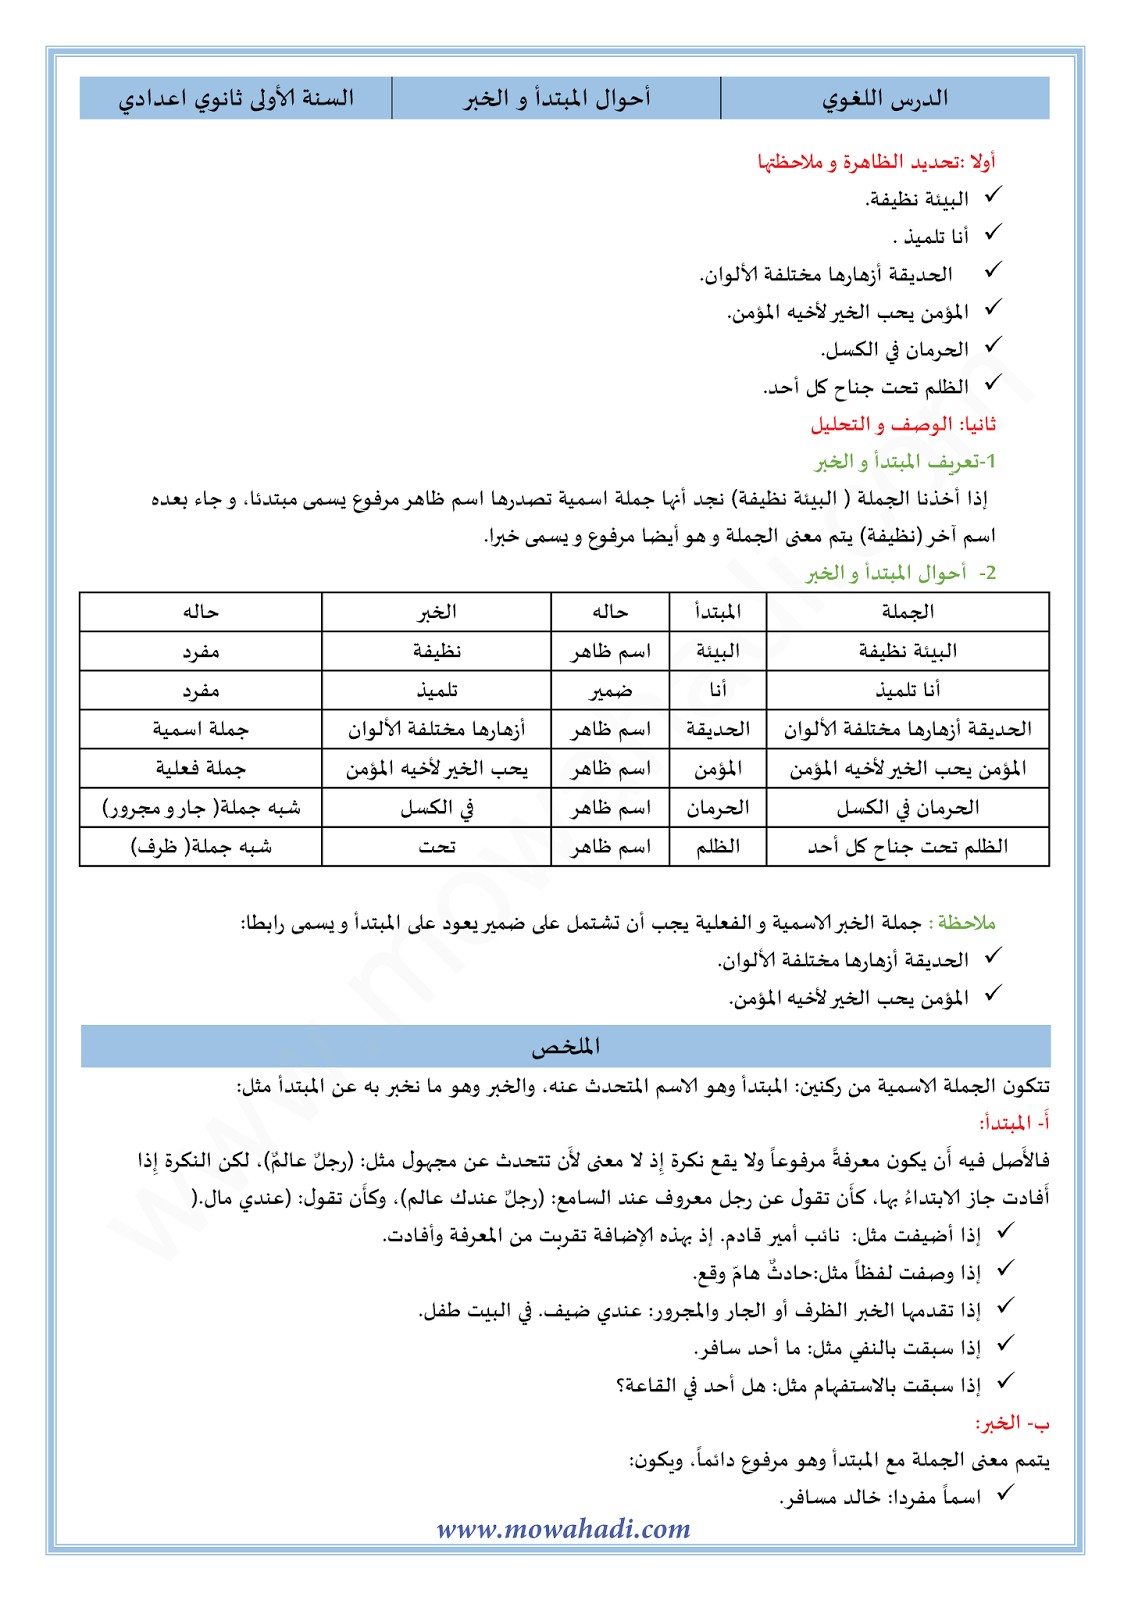 الدرس اللغوي أحوال المبتدأ و الخبر للسنة الأولى اعدادي في مادة اللغة العربية 18-cours-dars-loghawi1_001